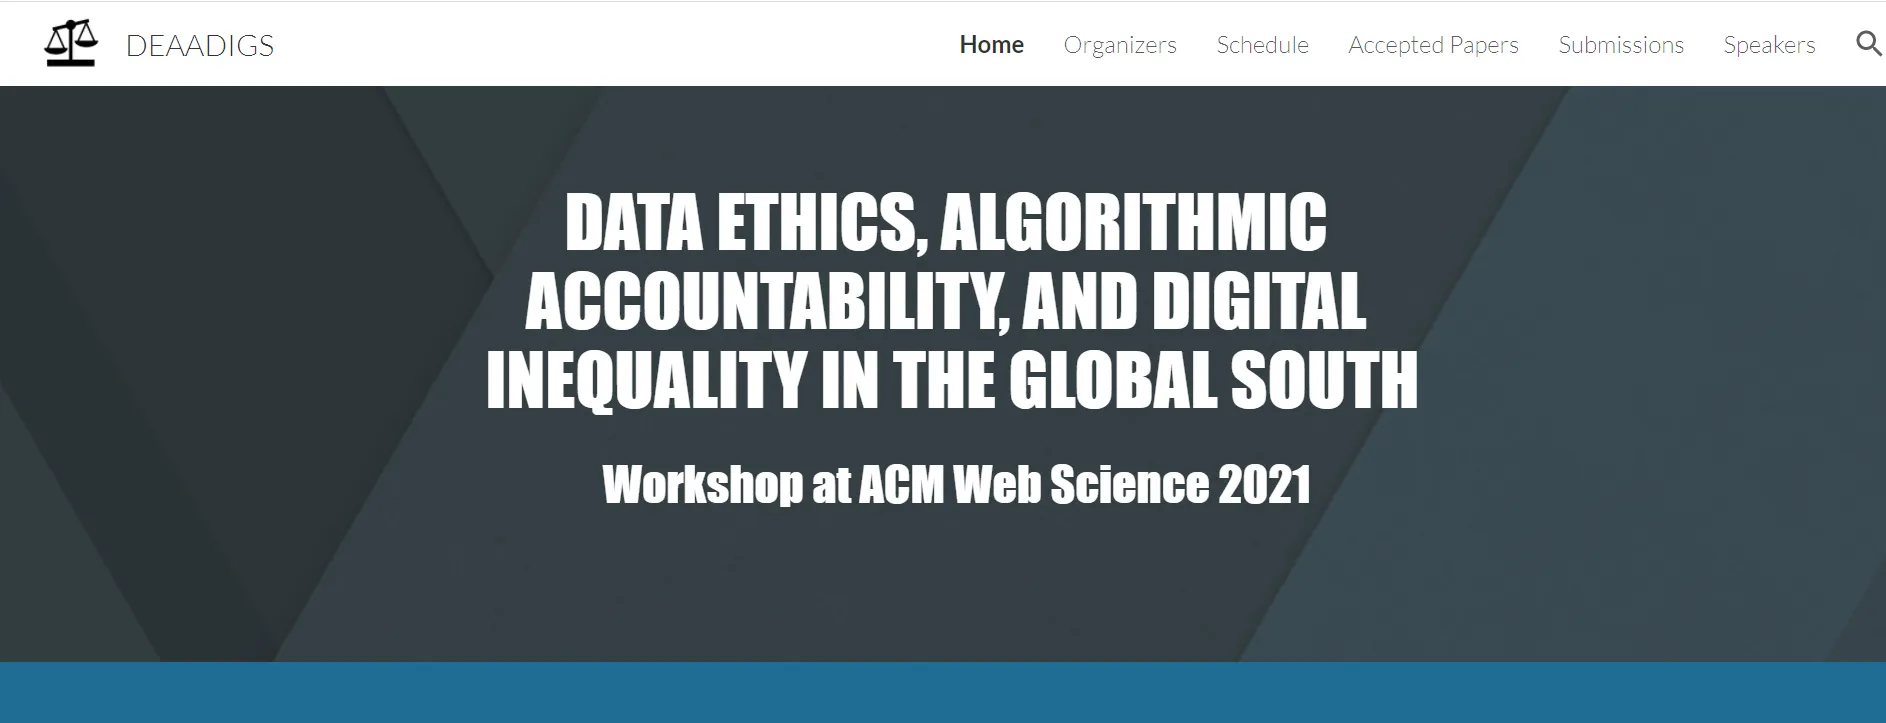 DEAADIGS workshop at ACM Web Science 2021